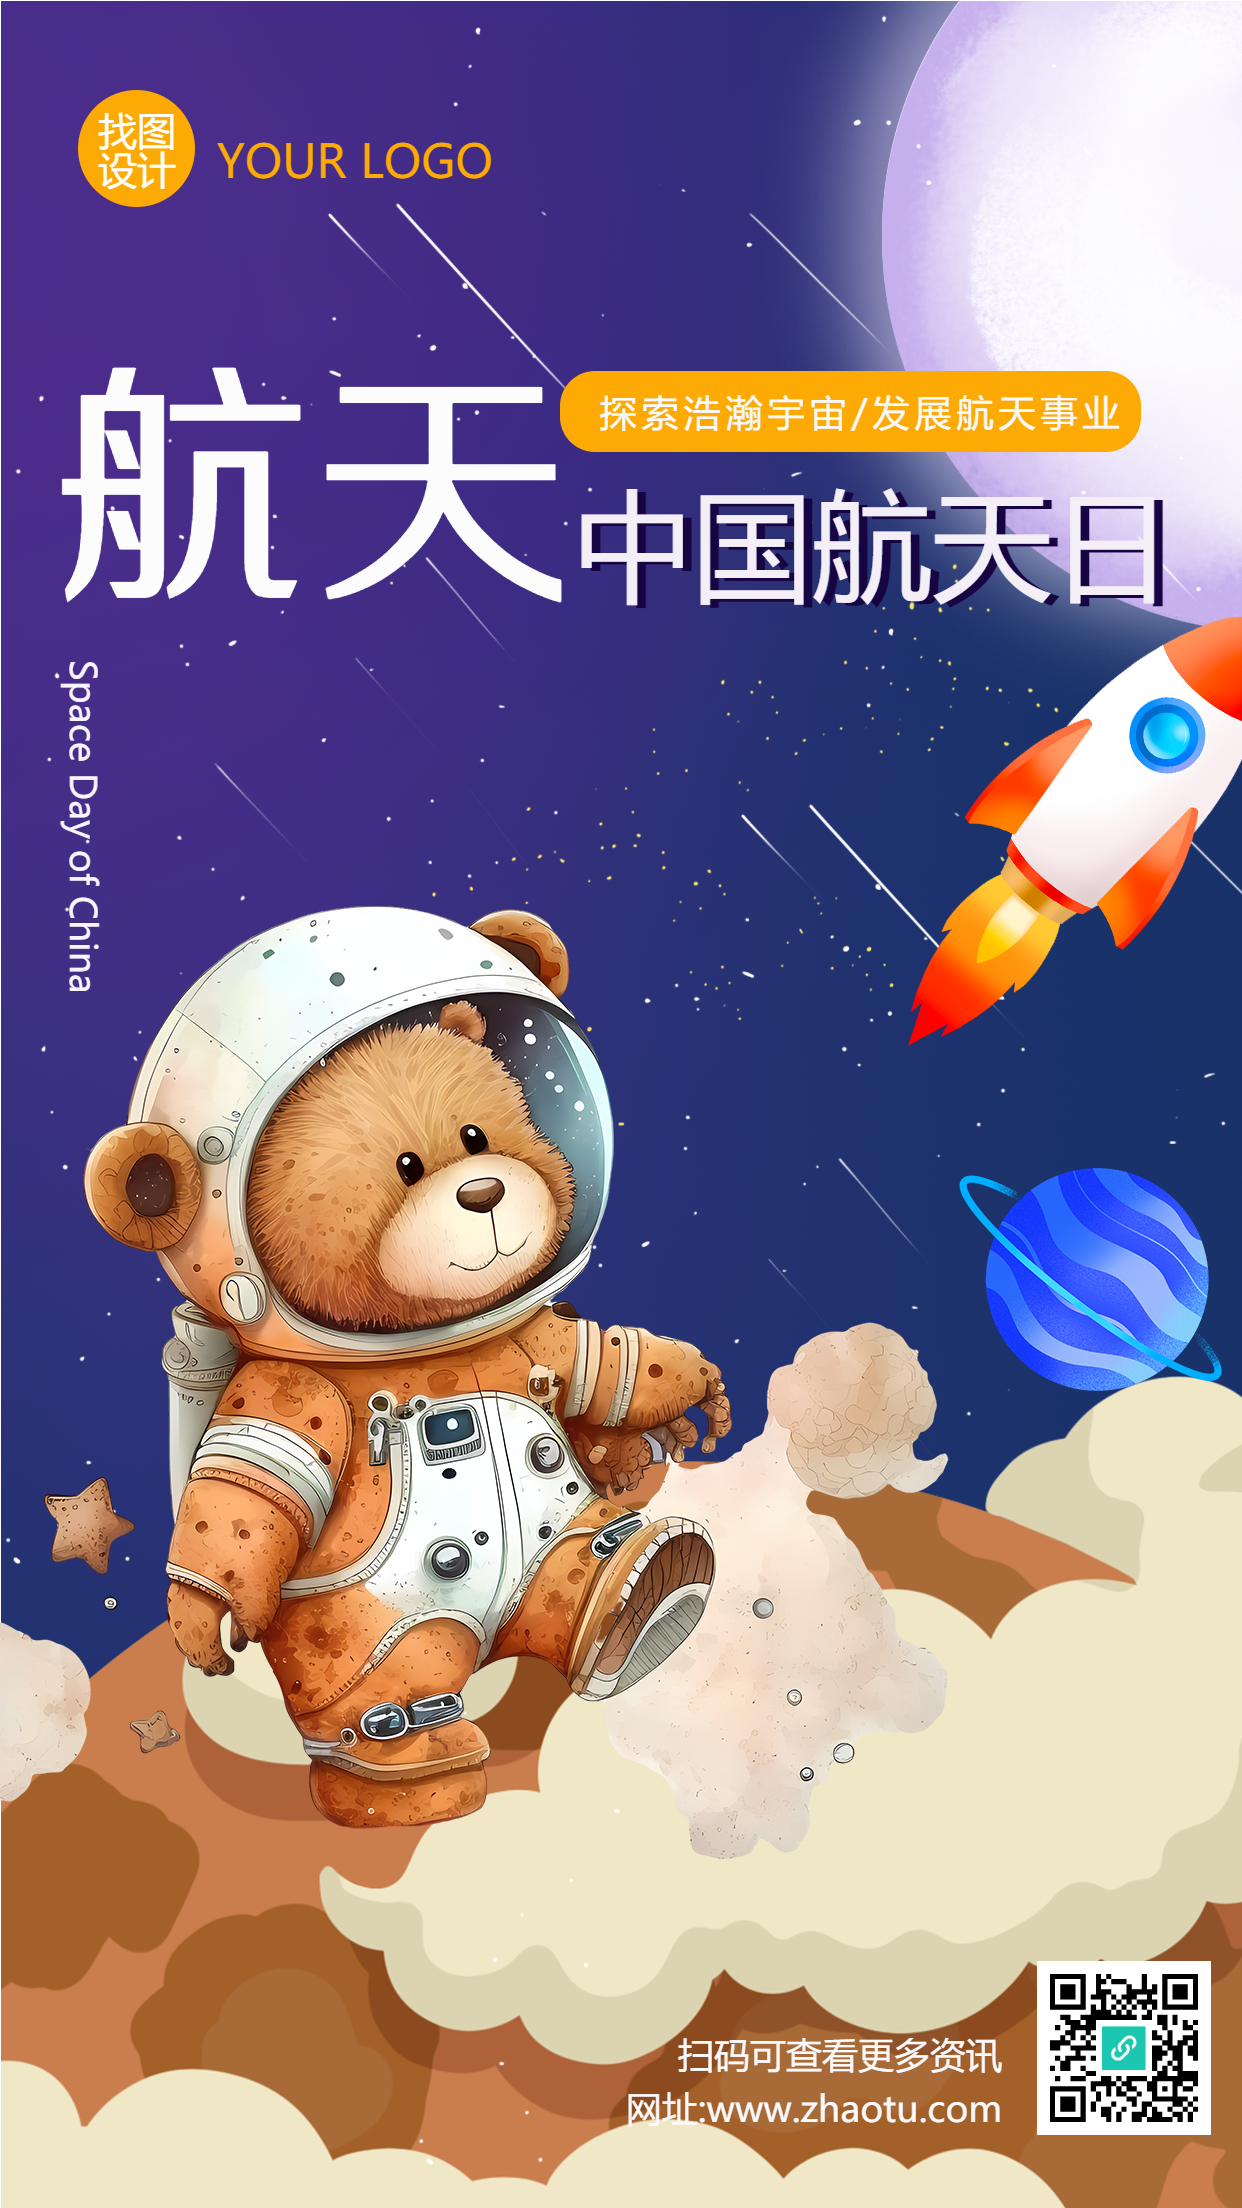 中国航天日手绘小熊宇航员创意手机海报